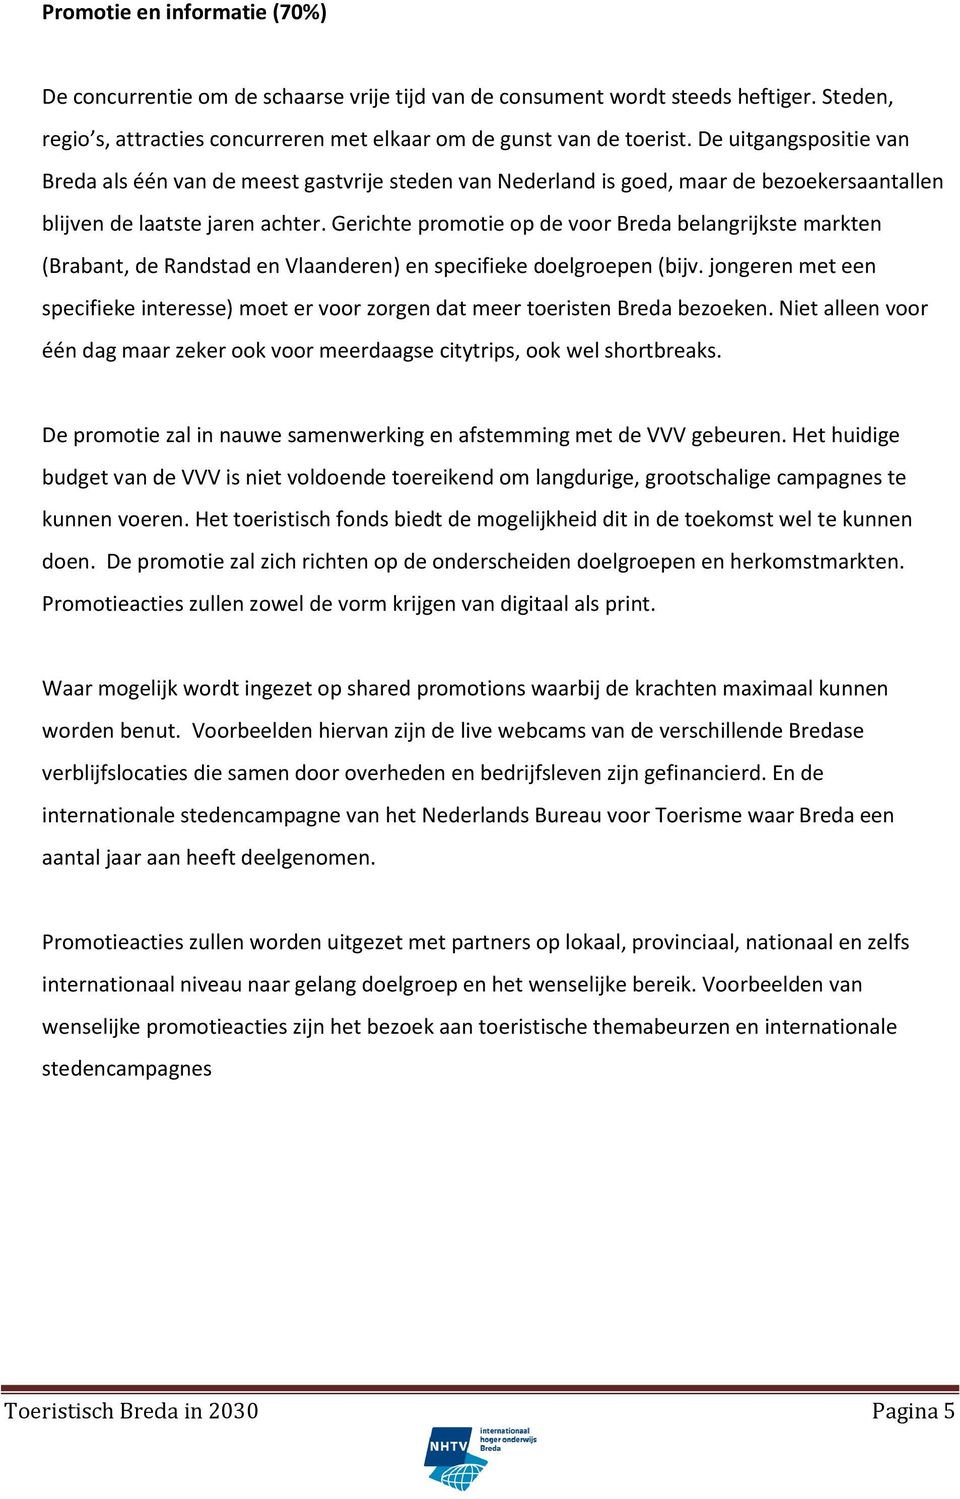 Gerichte promotie op de voor Breda belangrijkste markten (Brabant, de Randstad en Vlaanderen) en specifieke doelgroepen (bijv.